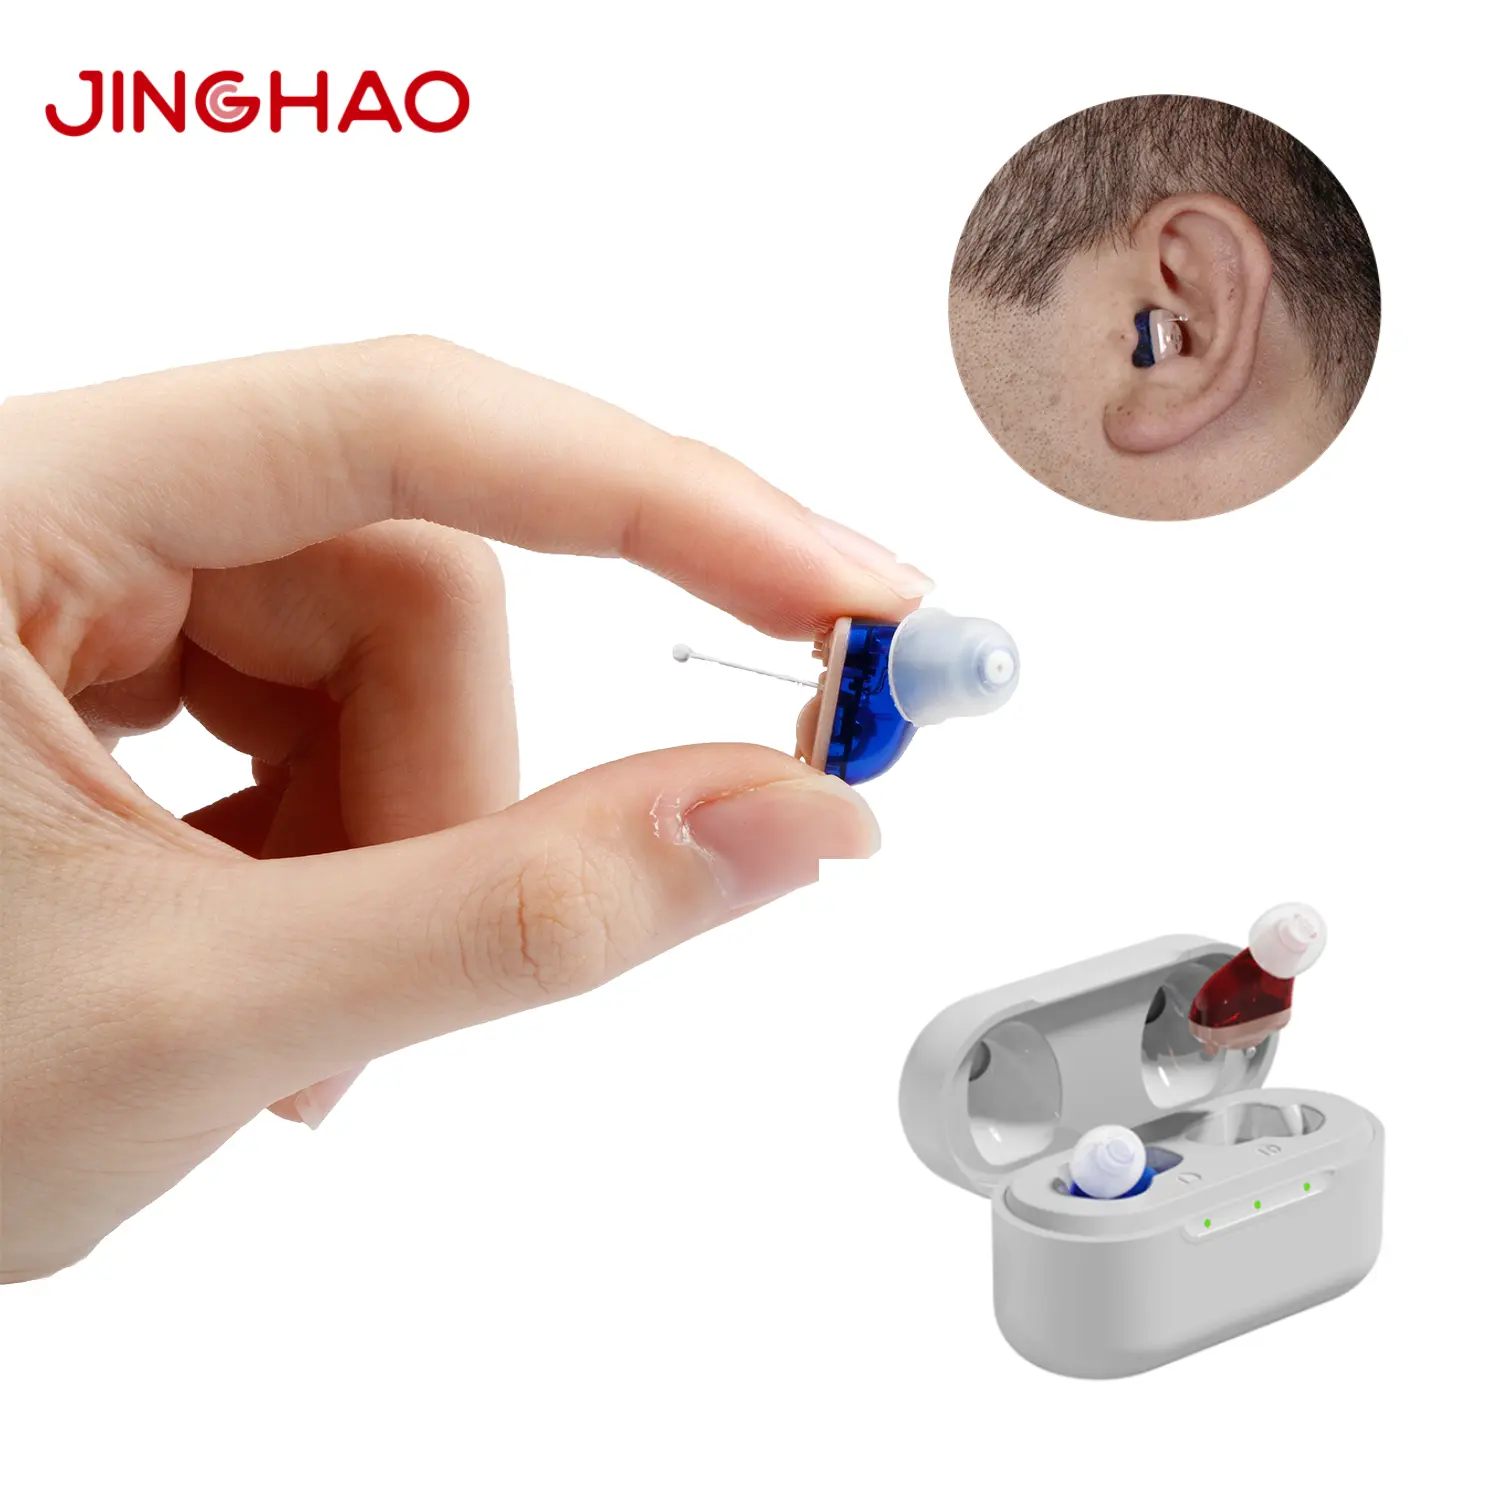 JINGHAOA17医療用ミニCIC人気のOTCデジタル補聴器高齢者と難聴者向けに充電可能